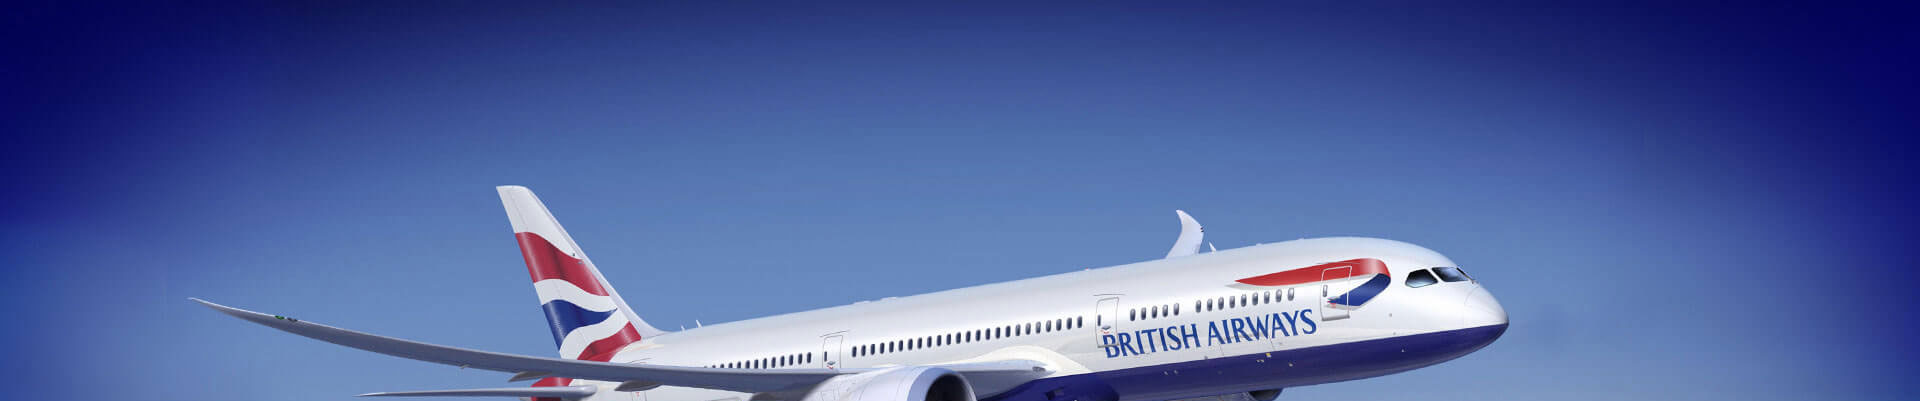 British Airways | Book Flights and Save